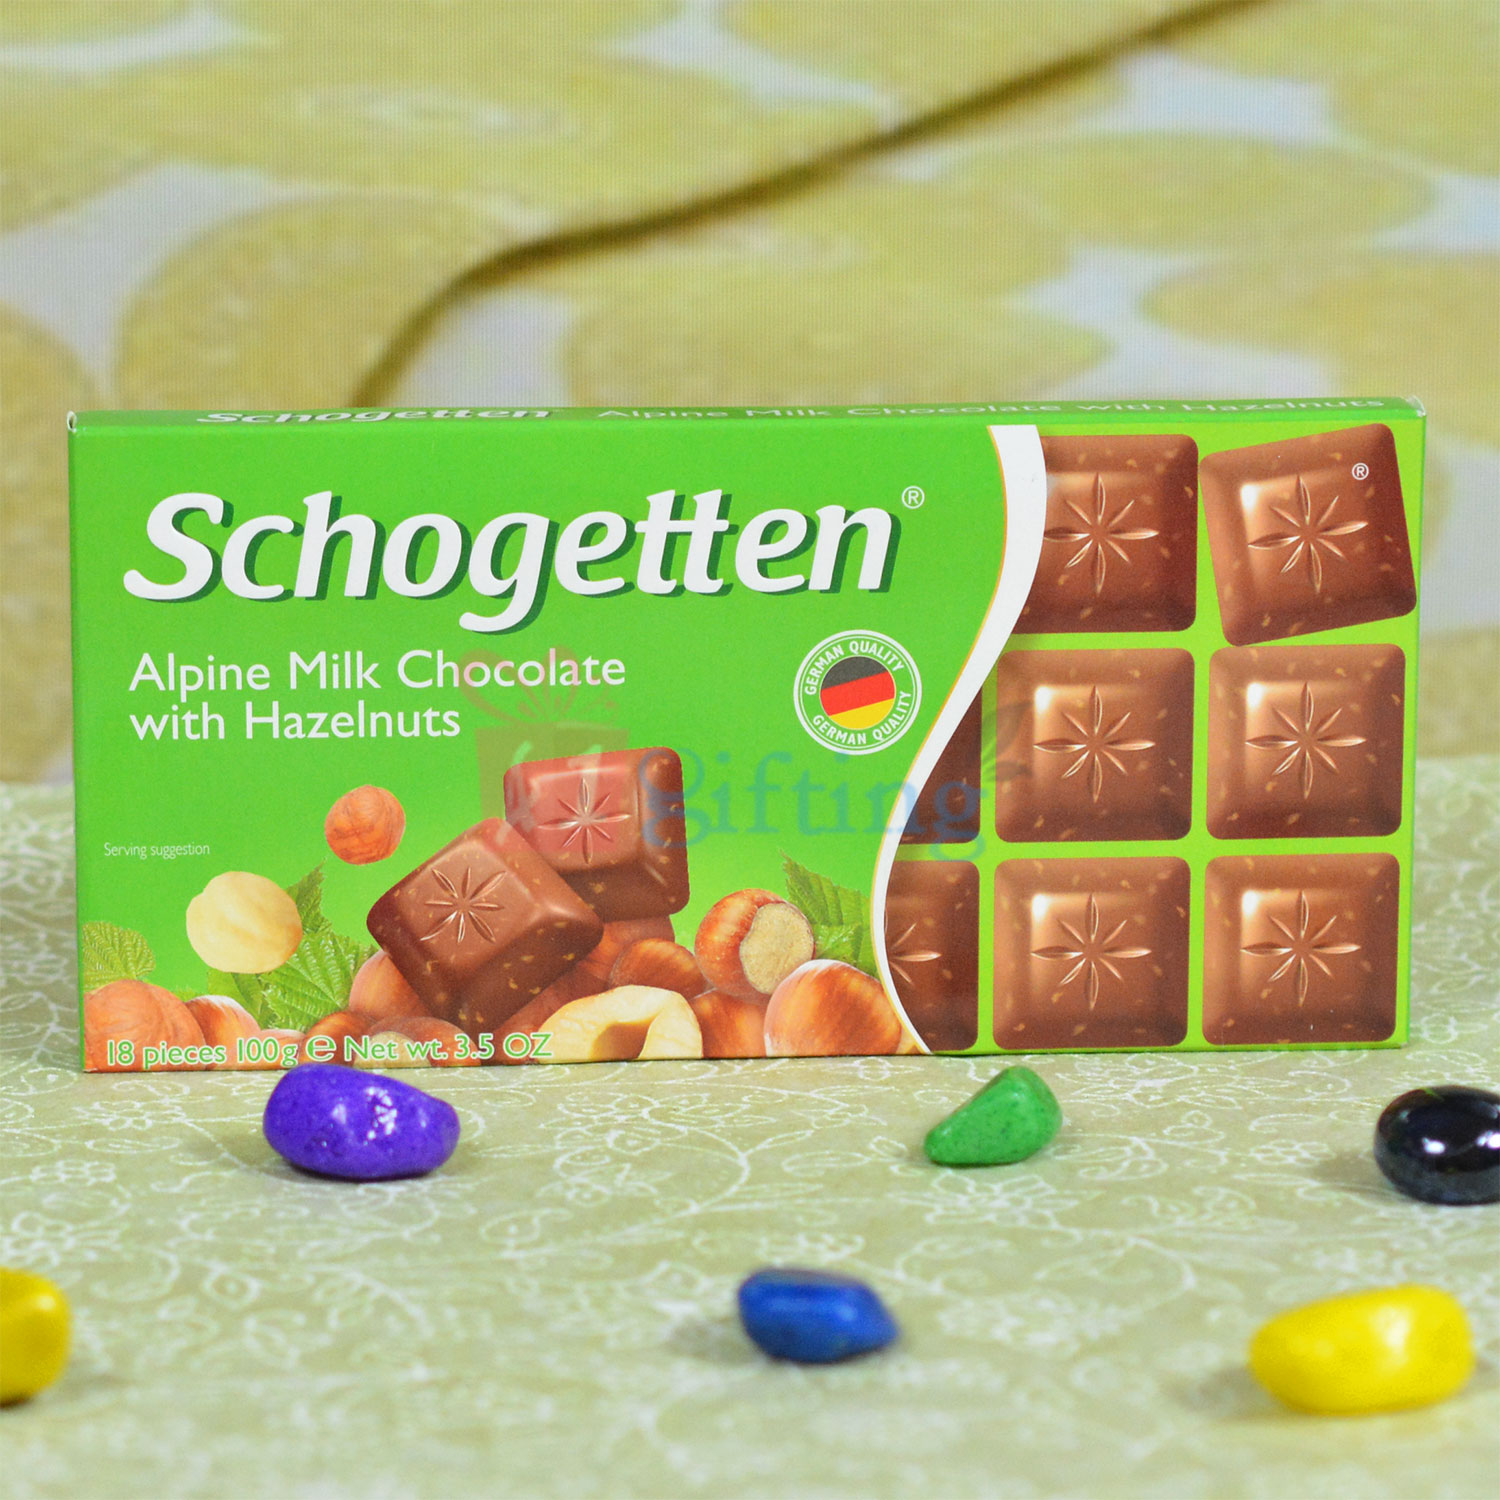 Schogetten Alpine Milk Chocolate with Hazelnuts